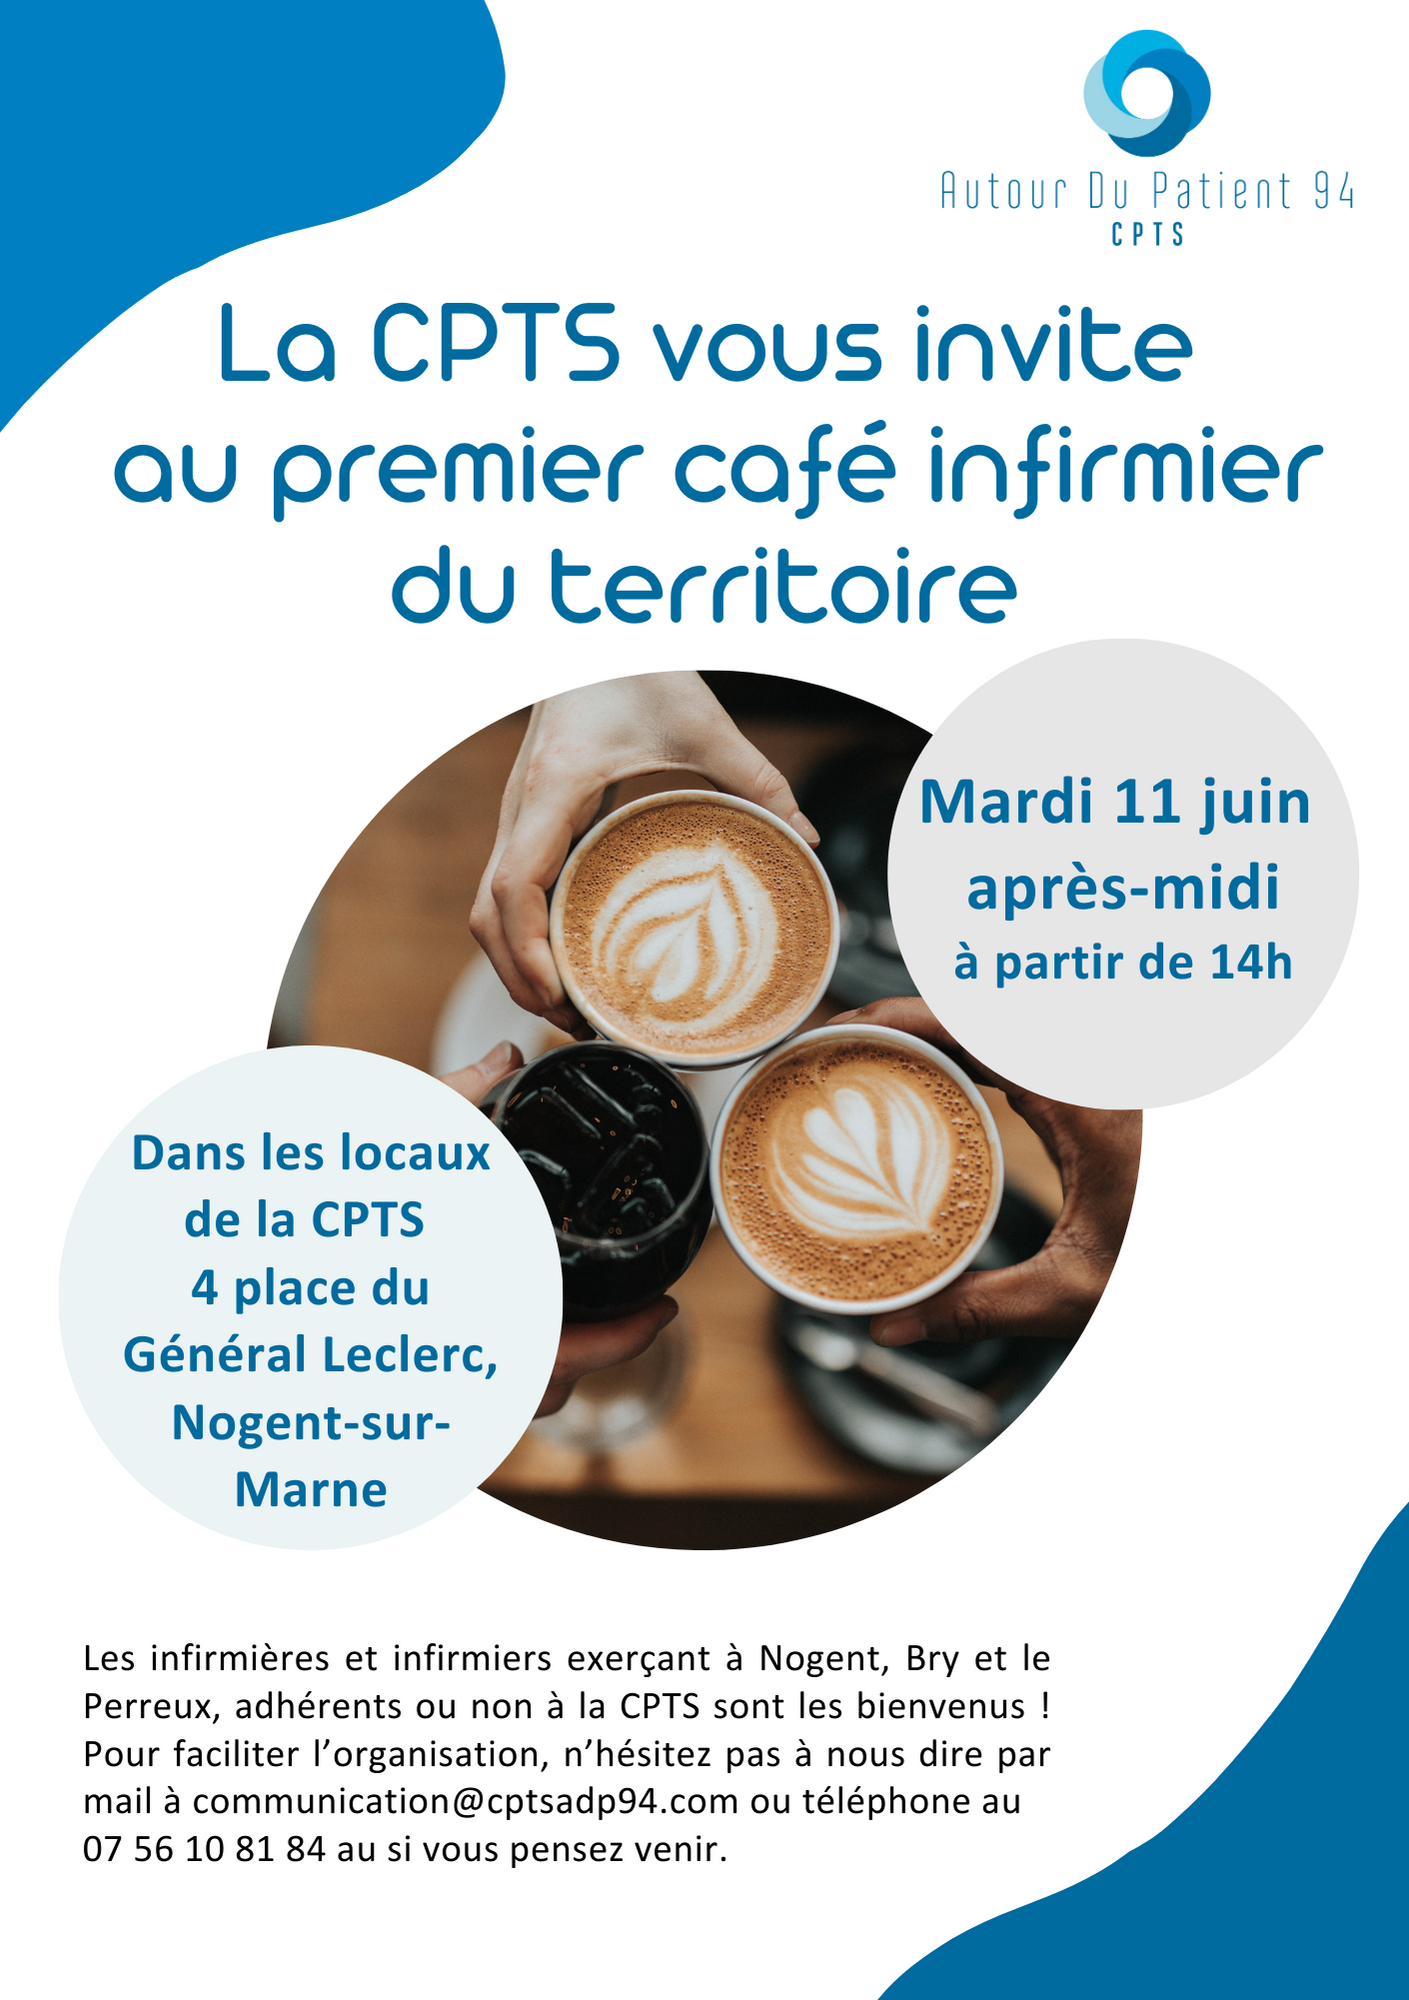 La CPTS vous invite au premier café infirmier du territoire. Mardi 11 juin après midi à partir de 14h. Dans les locaux de la CPRS 4 place du général Leclerc.